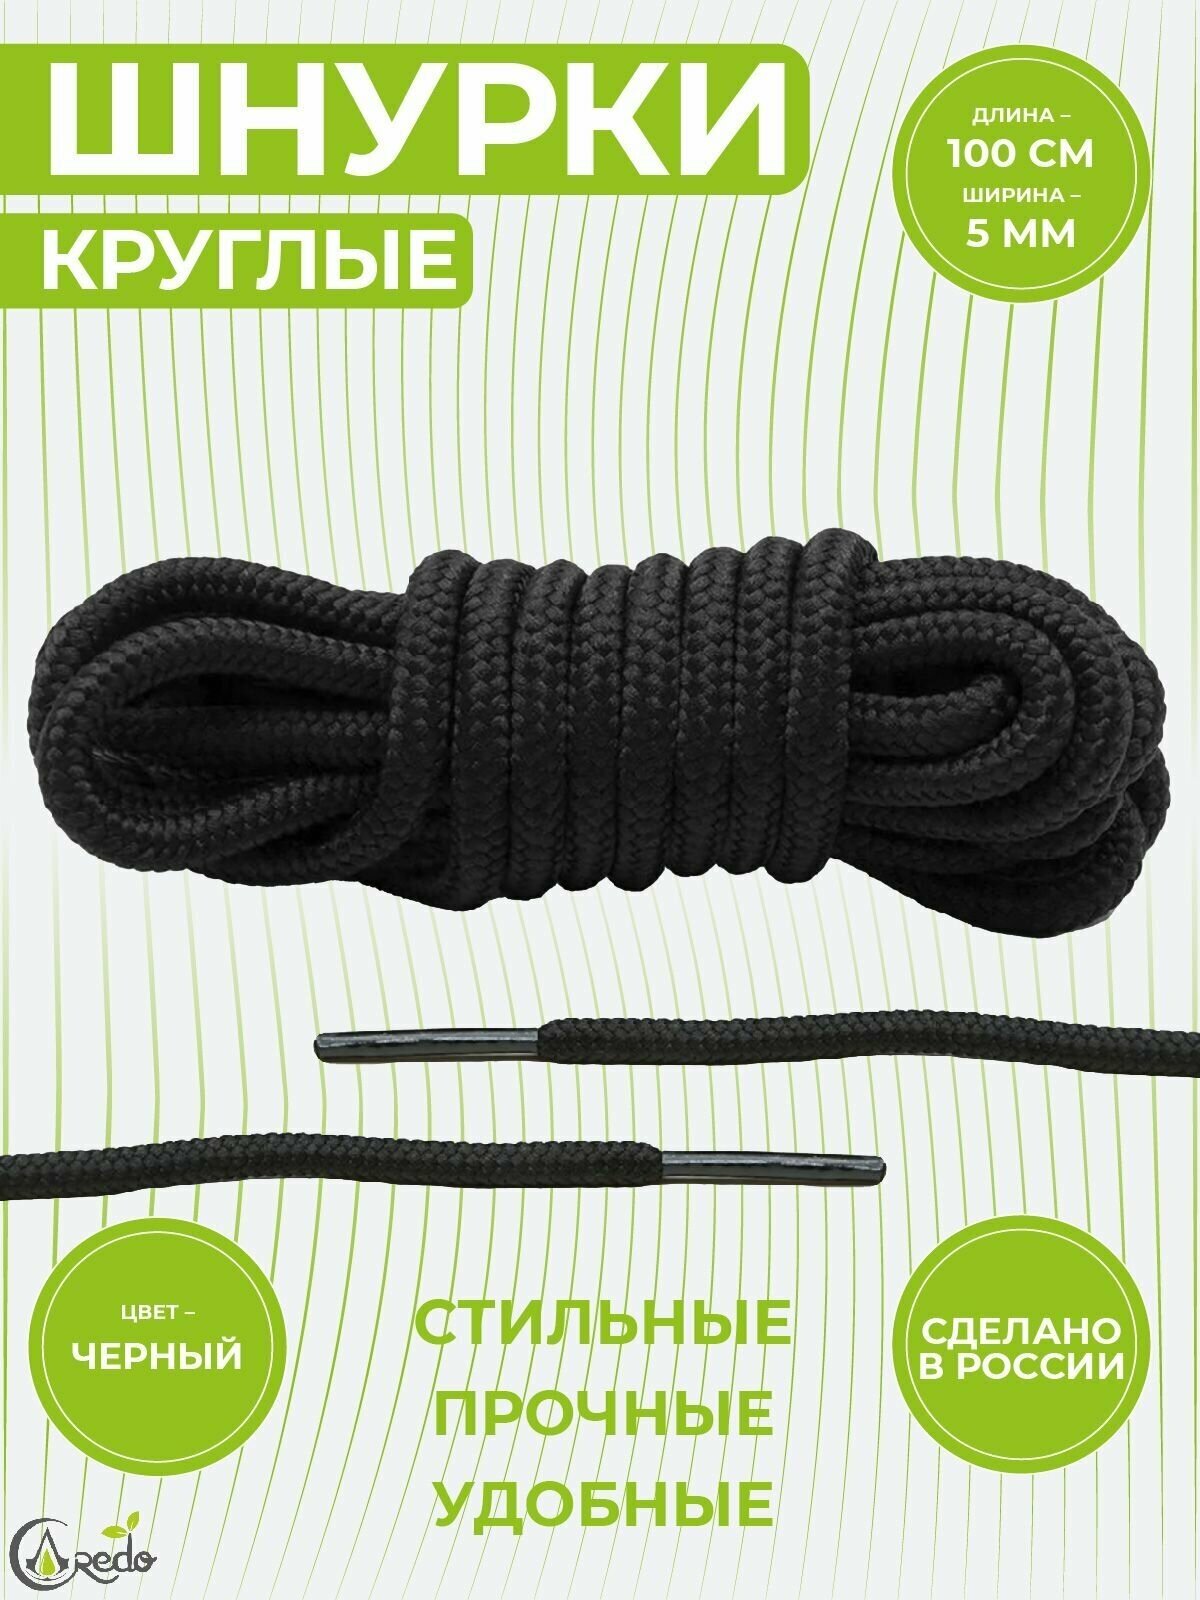 Шнурки для берцев и другой обуви, длина 100 сантиметров, диаметр 5 мм. Сделаны в России. Черные.